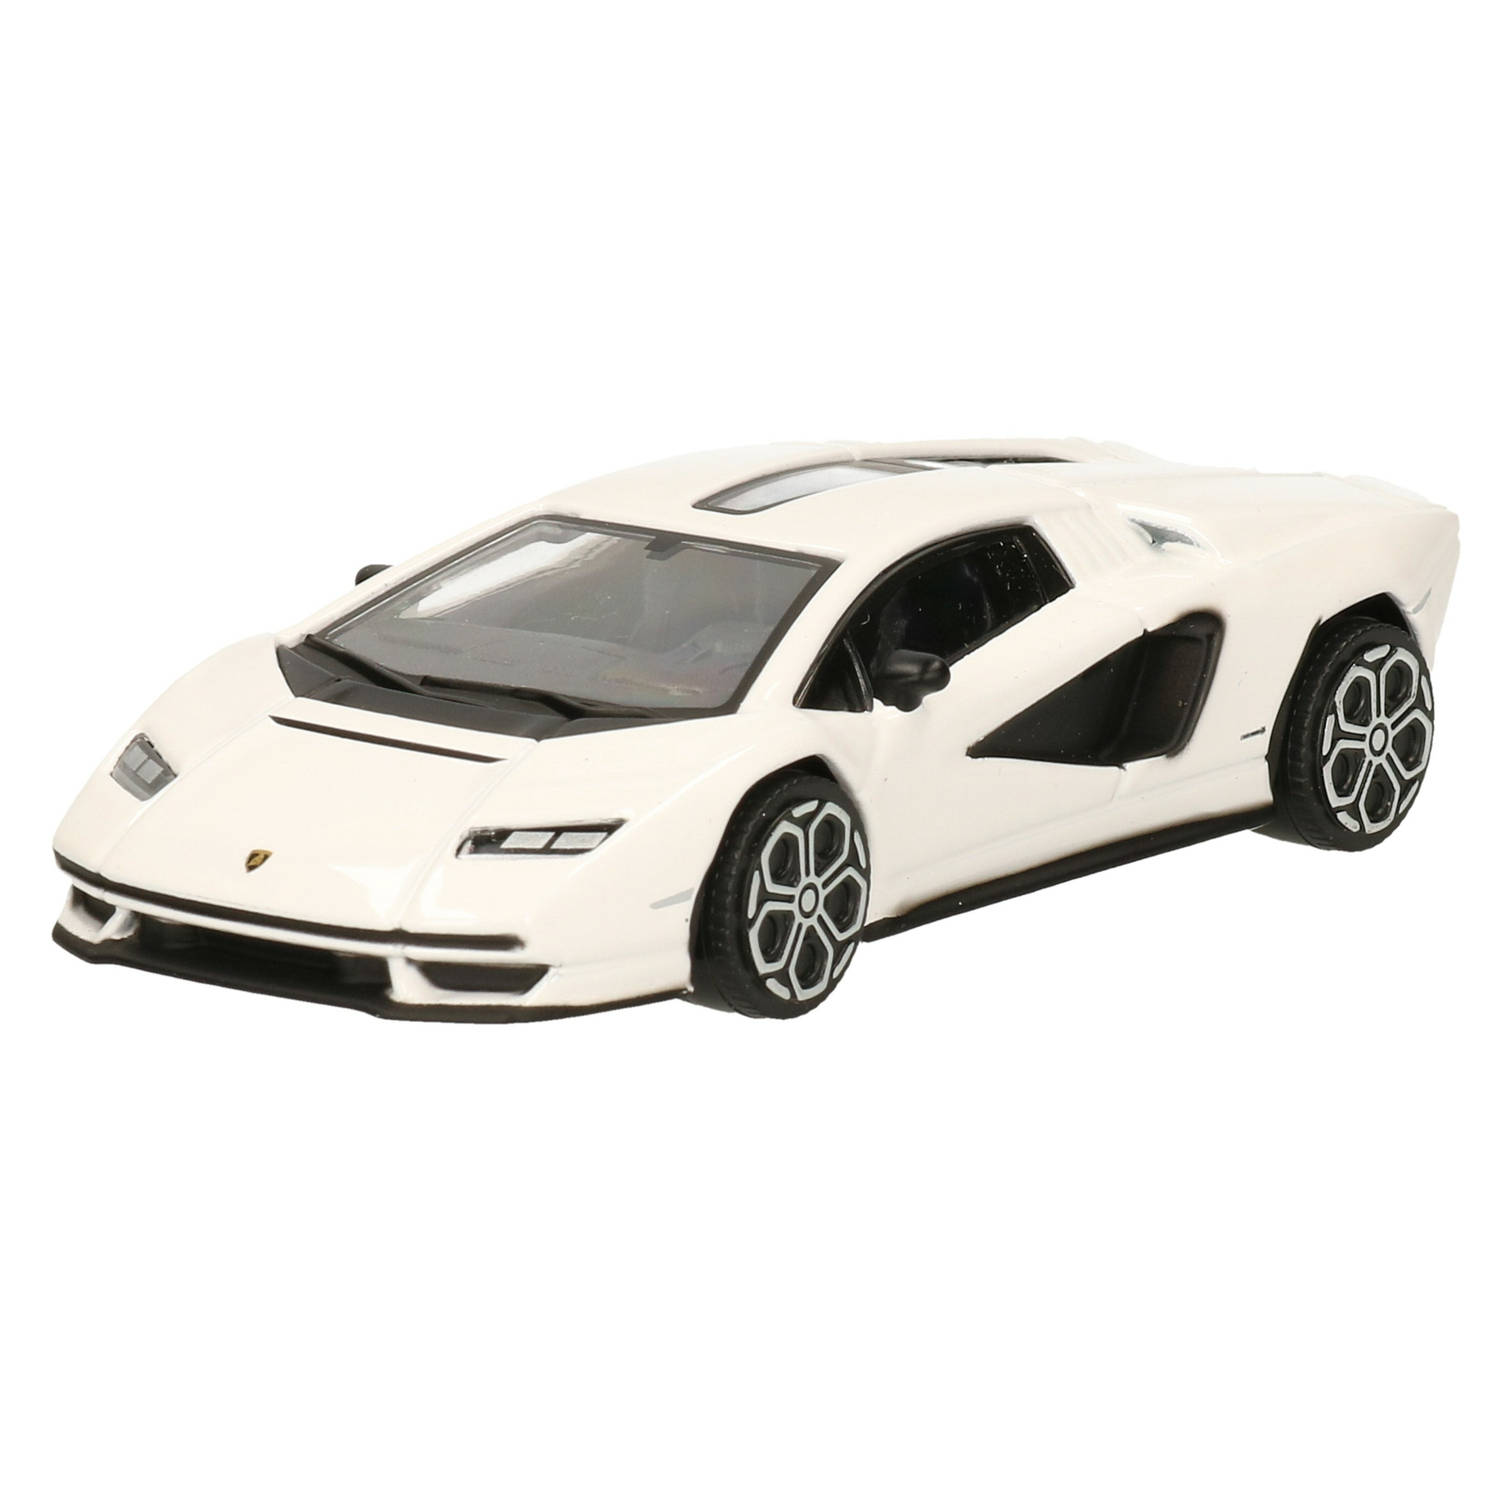 Modelauto/speelgoedauto Lamborghini Countach schaal 1:43/11 x 5 x 3 cm - Speelgoed auto&apos;s